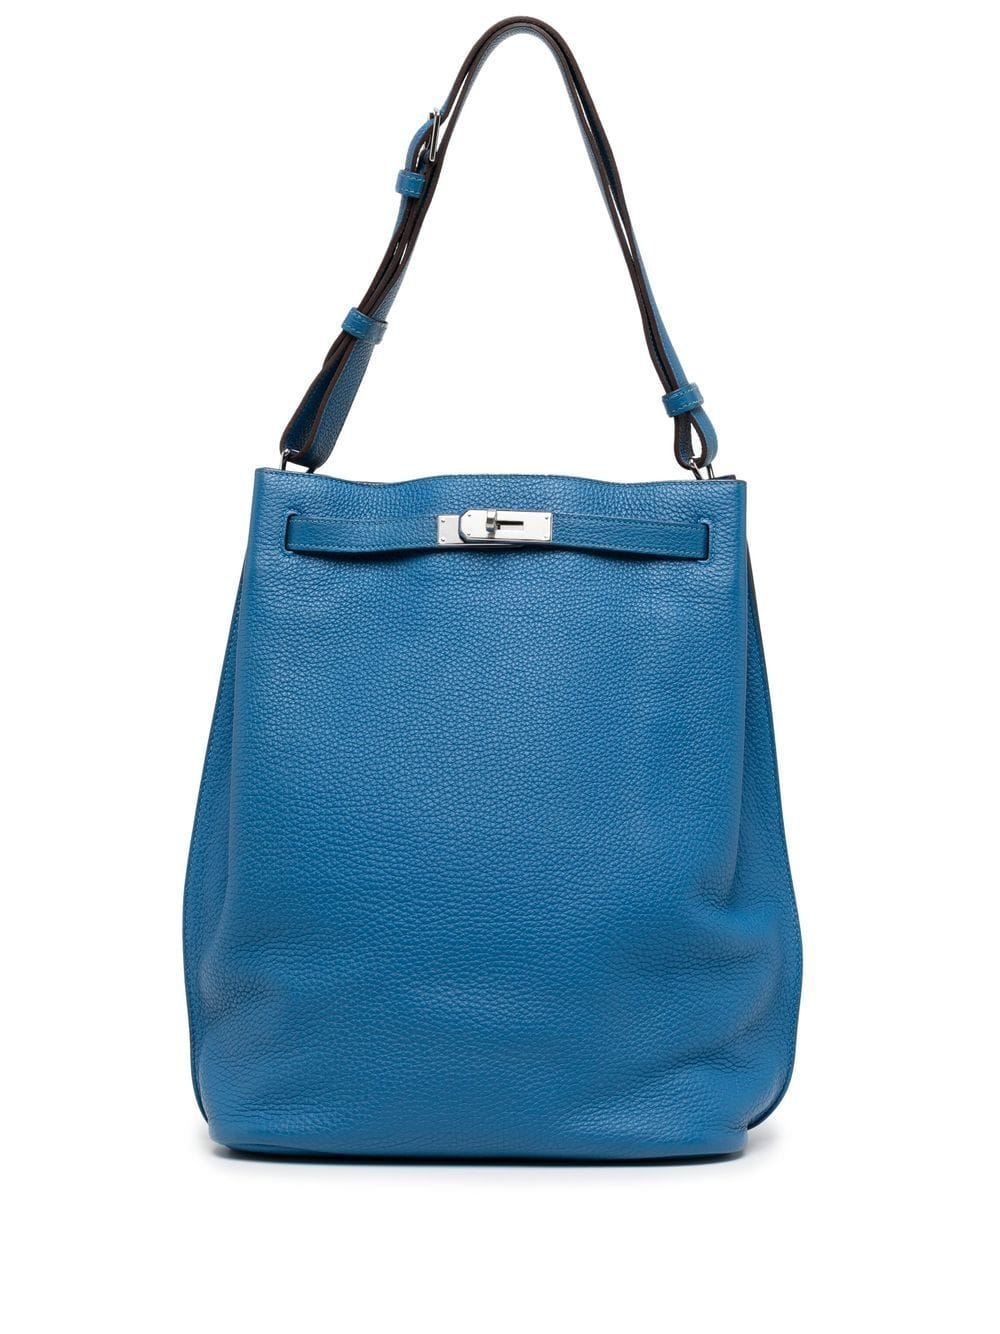 Hermès 2011 pre-owned Sac So Kelly 26 Shoulder Bag - Farfetch